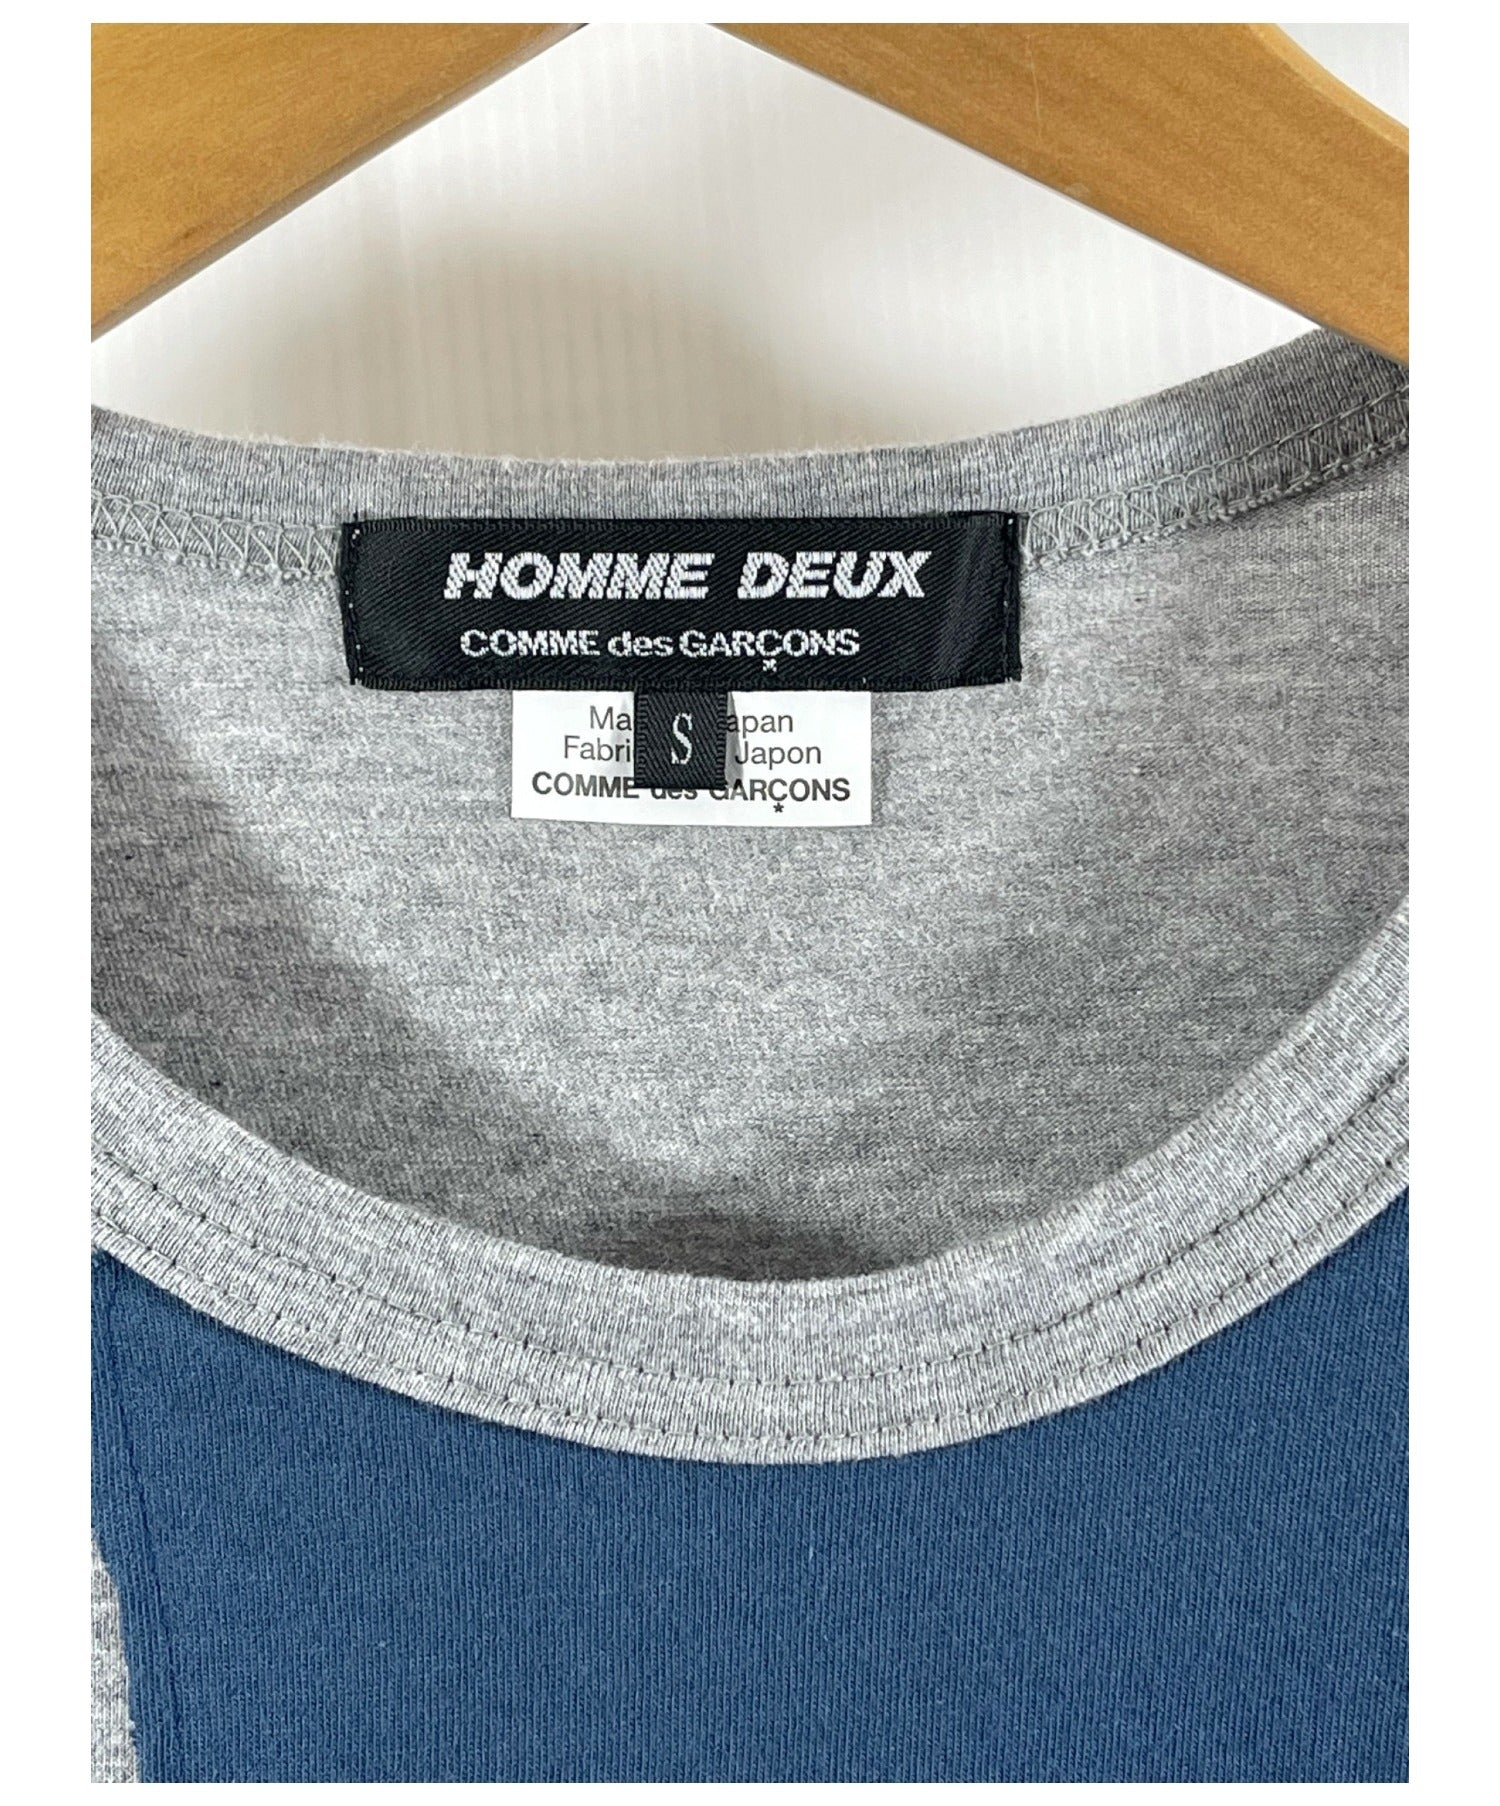 COMME des GARCONS HOMME DEUX Patchwork T-shirts